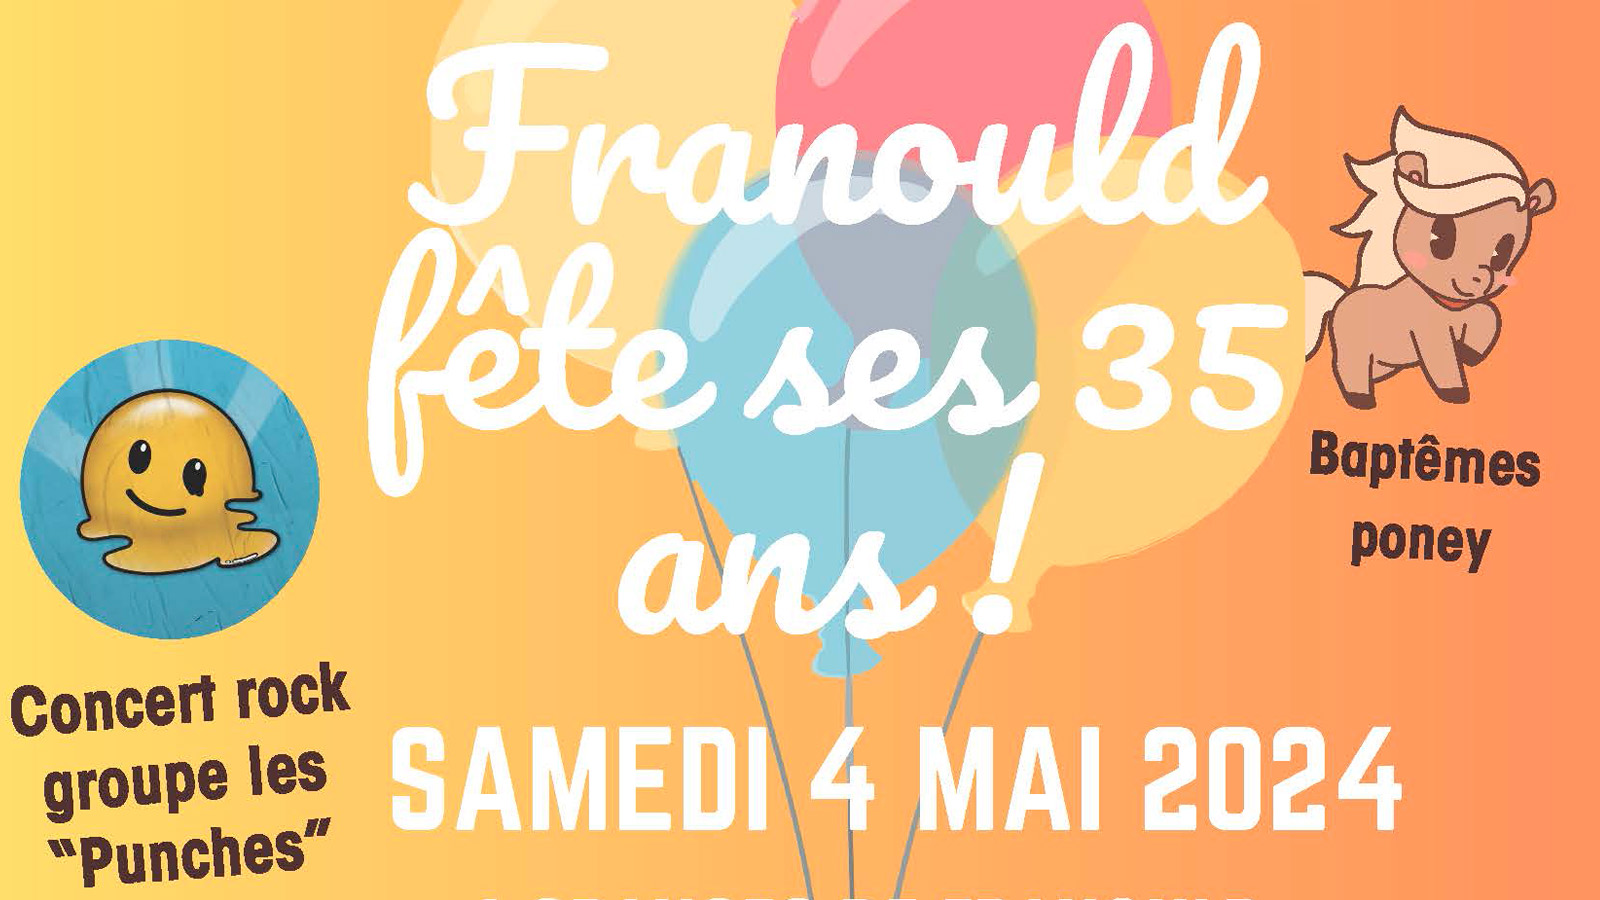 Les Crins de Franould  fêtent leurs 35 ans